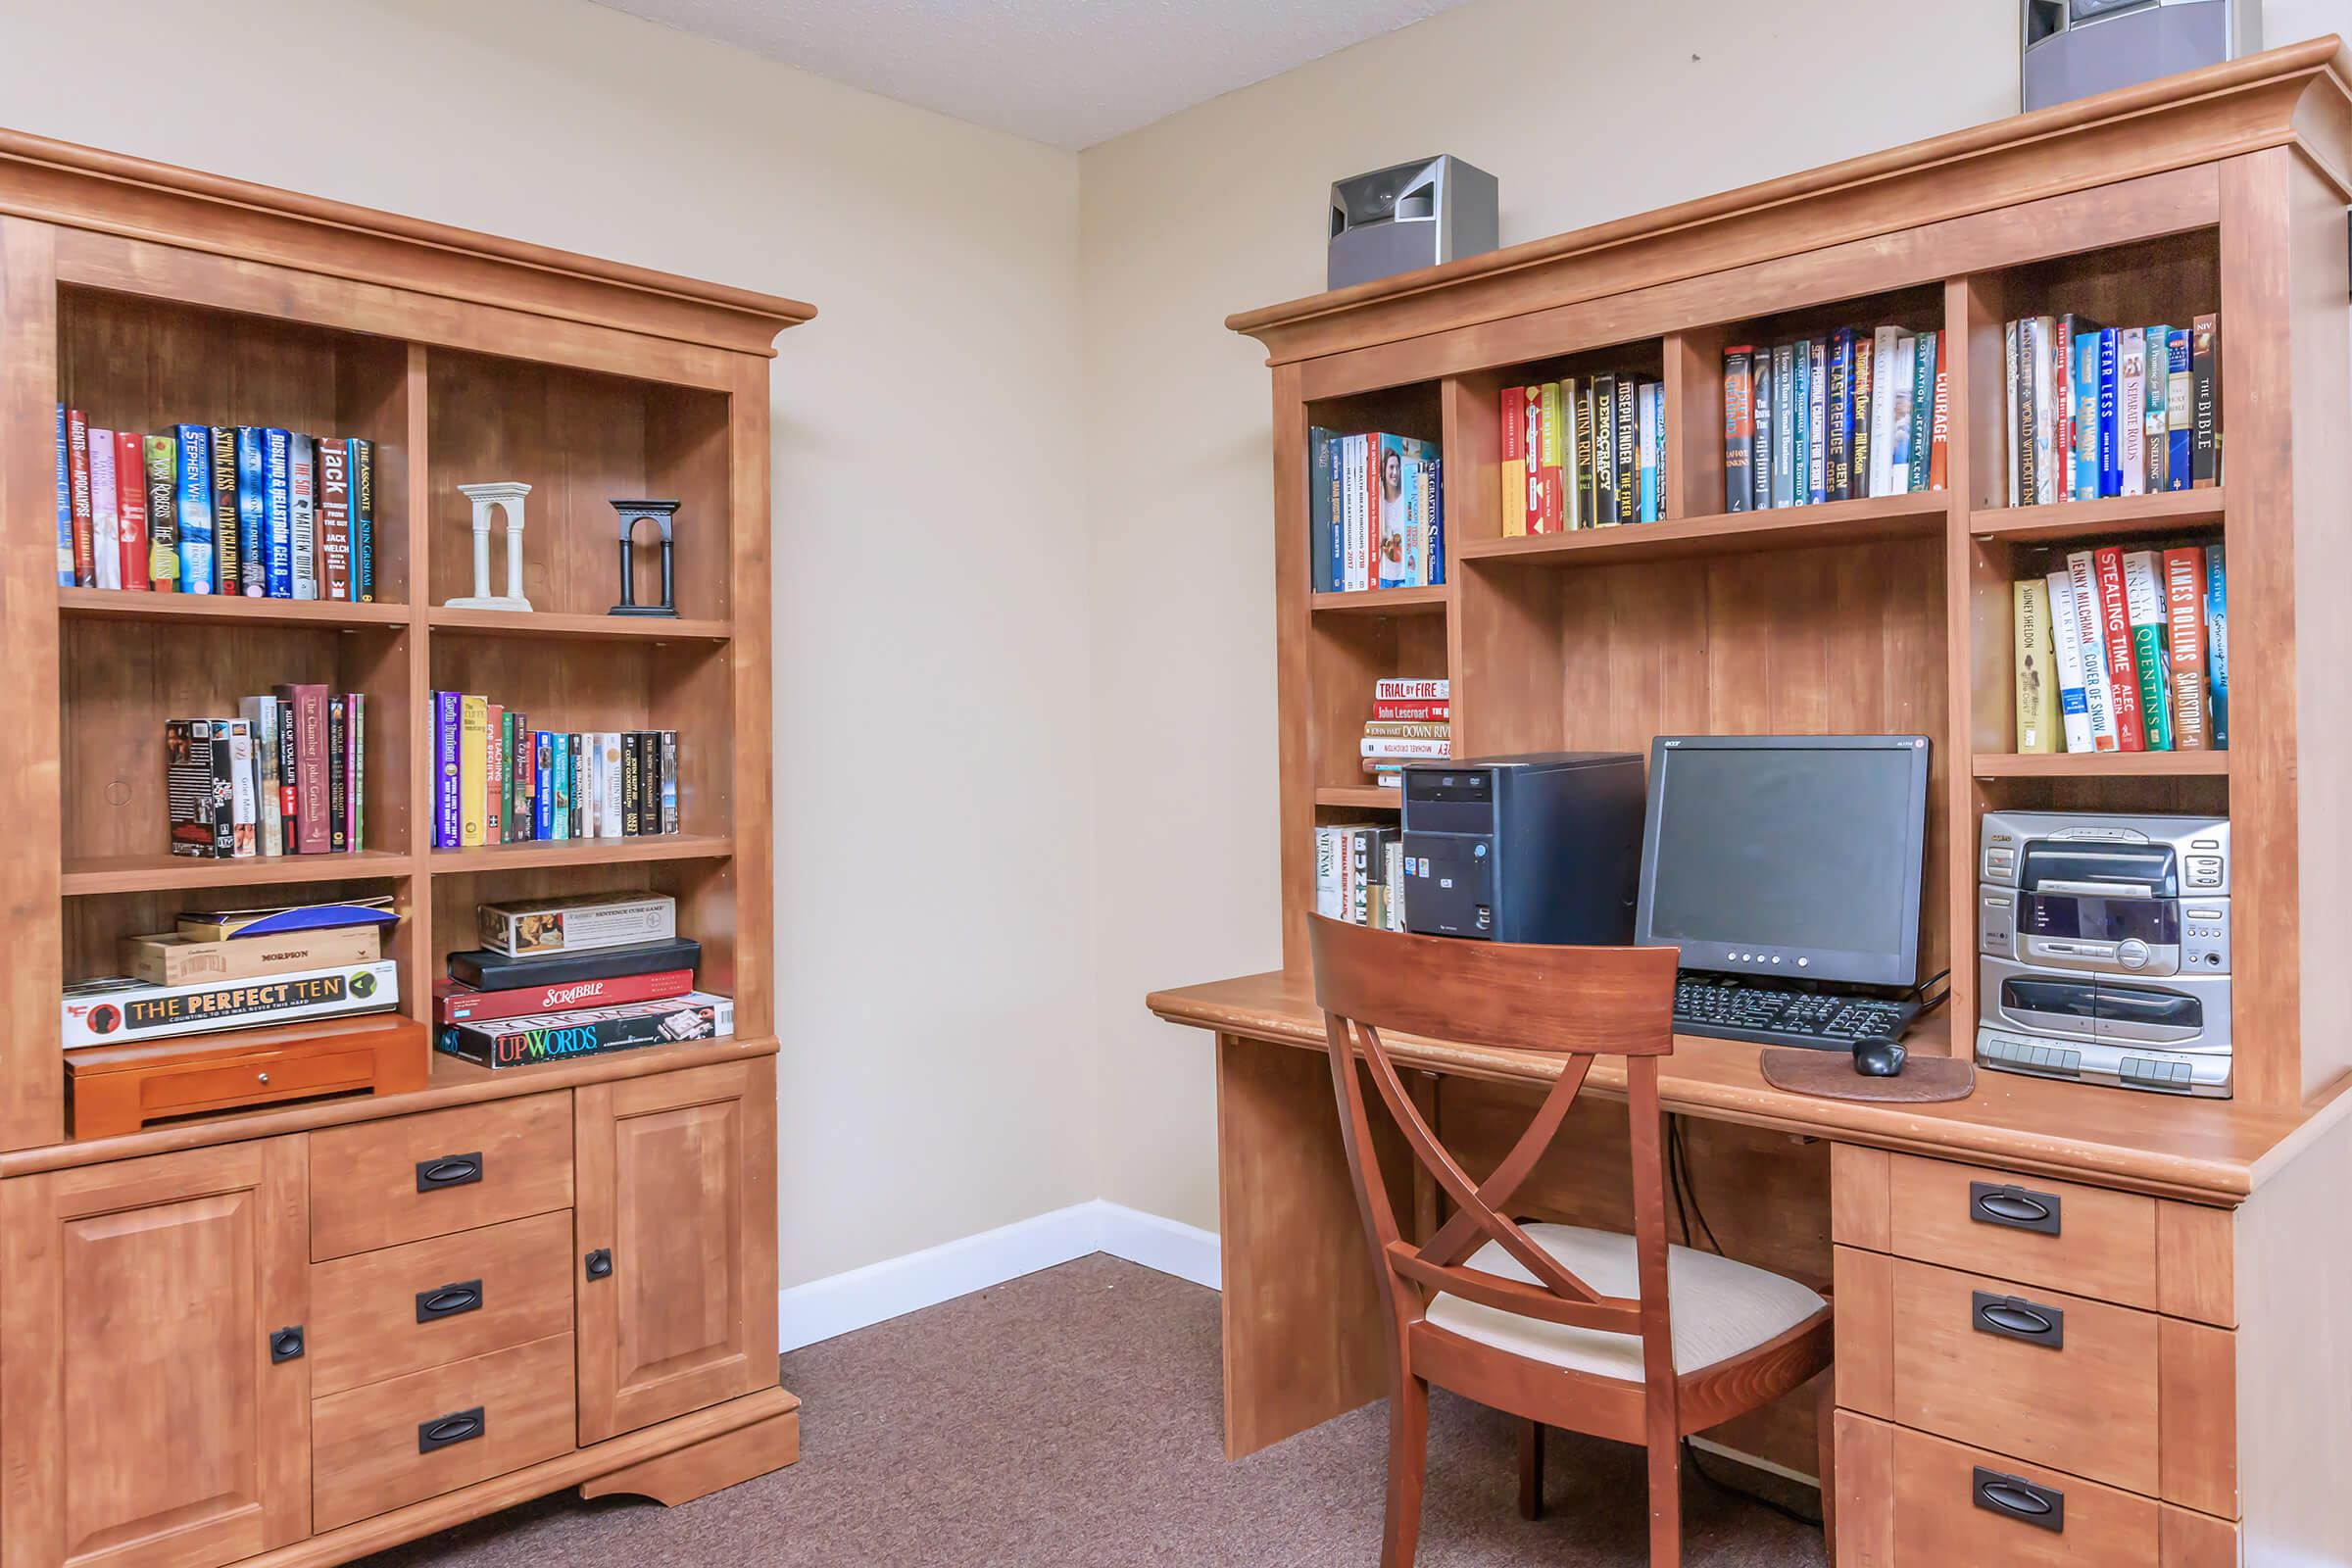 a living room with a book shelf